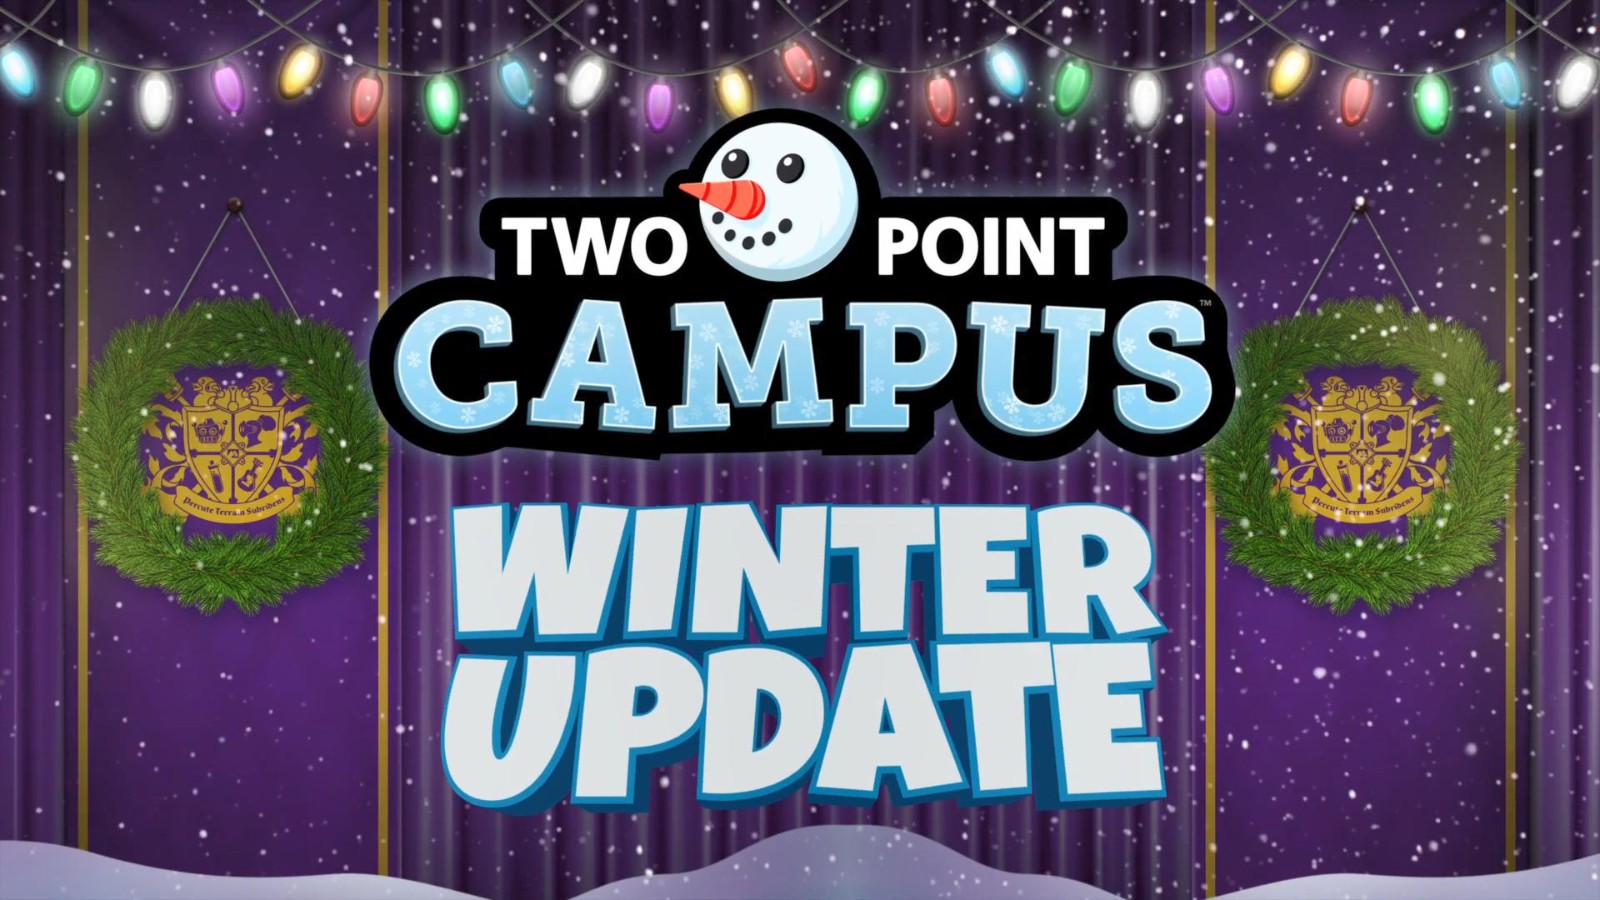 《双点校园》冬季更新上线 新挑战模式登场